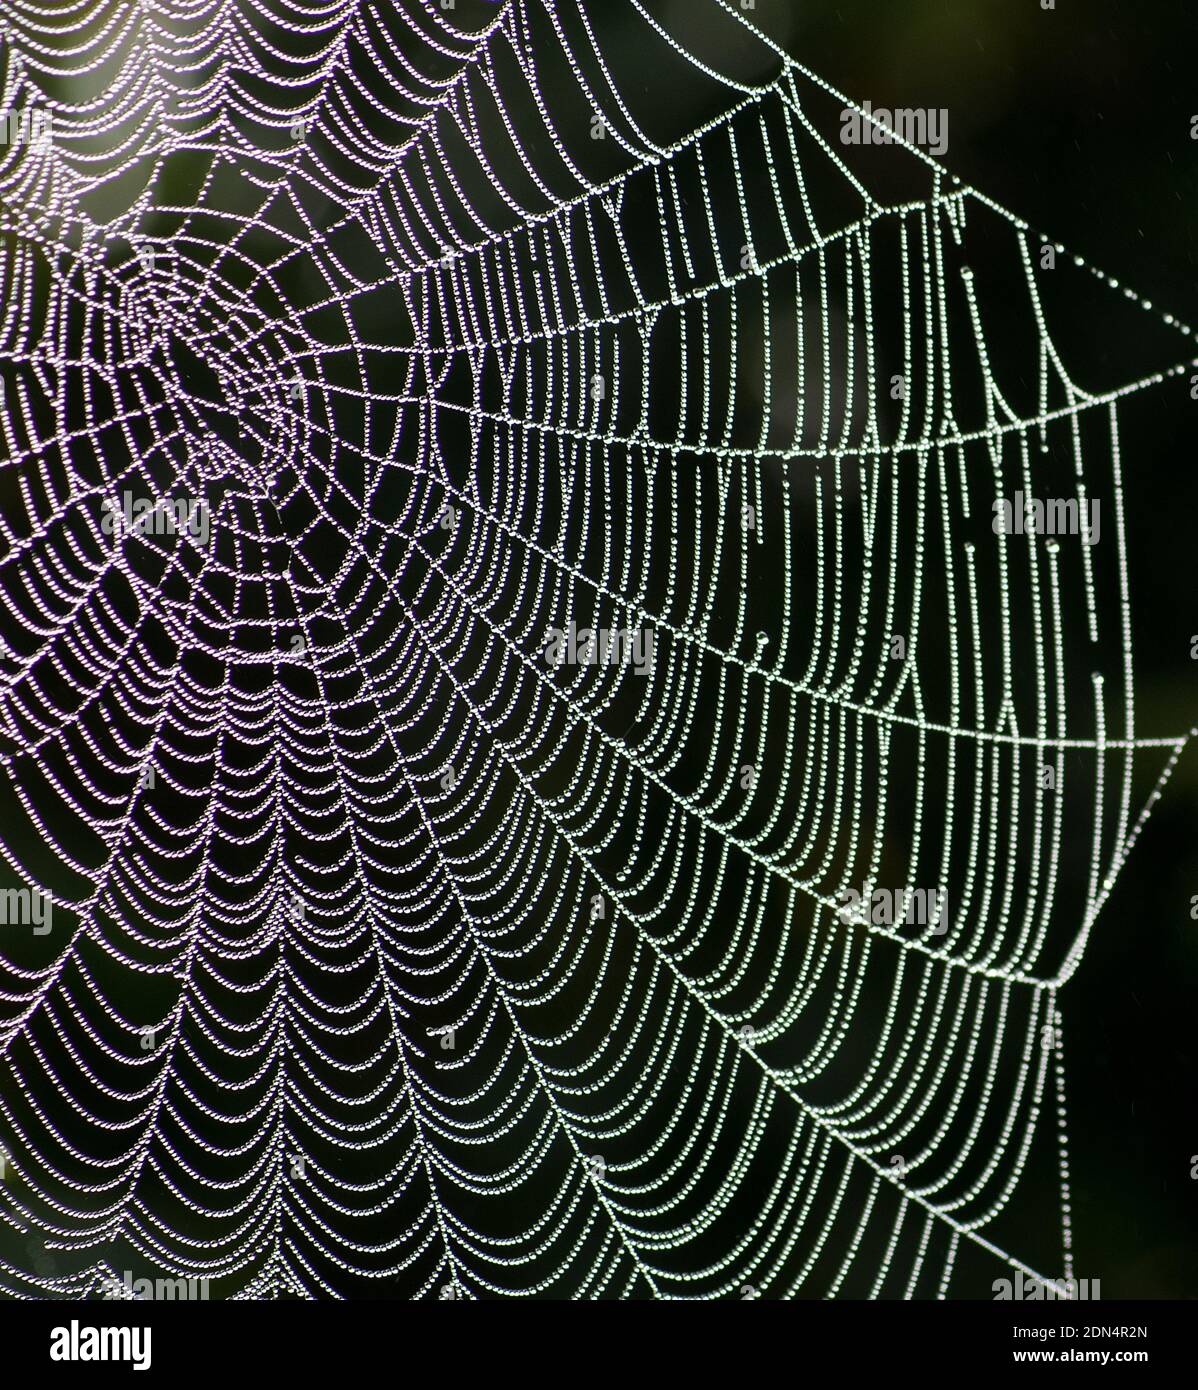 Nahaufnahme des Spinnennetzes, das vom frühen Morgentau bedeckt ist Fällt in Kurven und Linien und leuchtet gegen ein Schwarzer Hintergrund Stockfoto